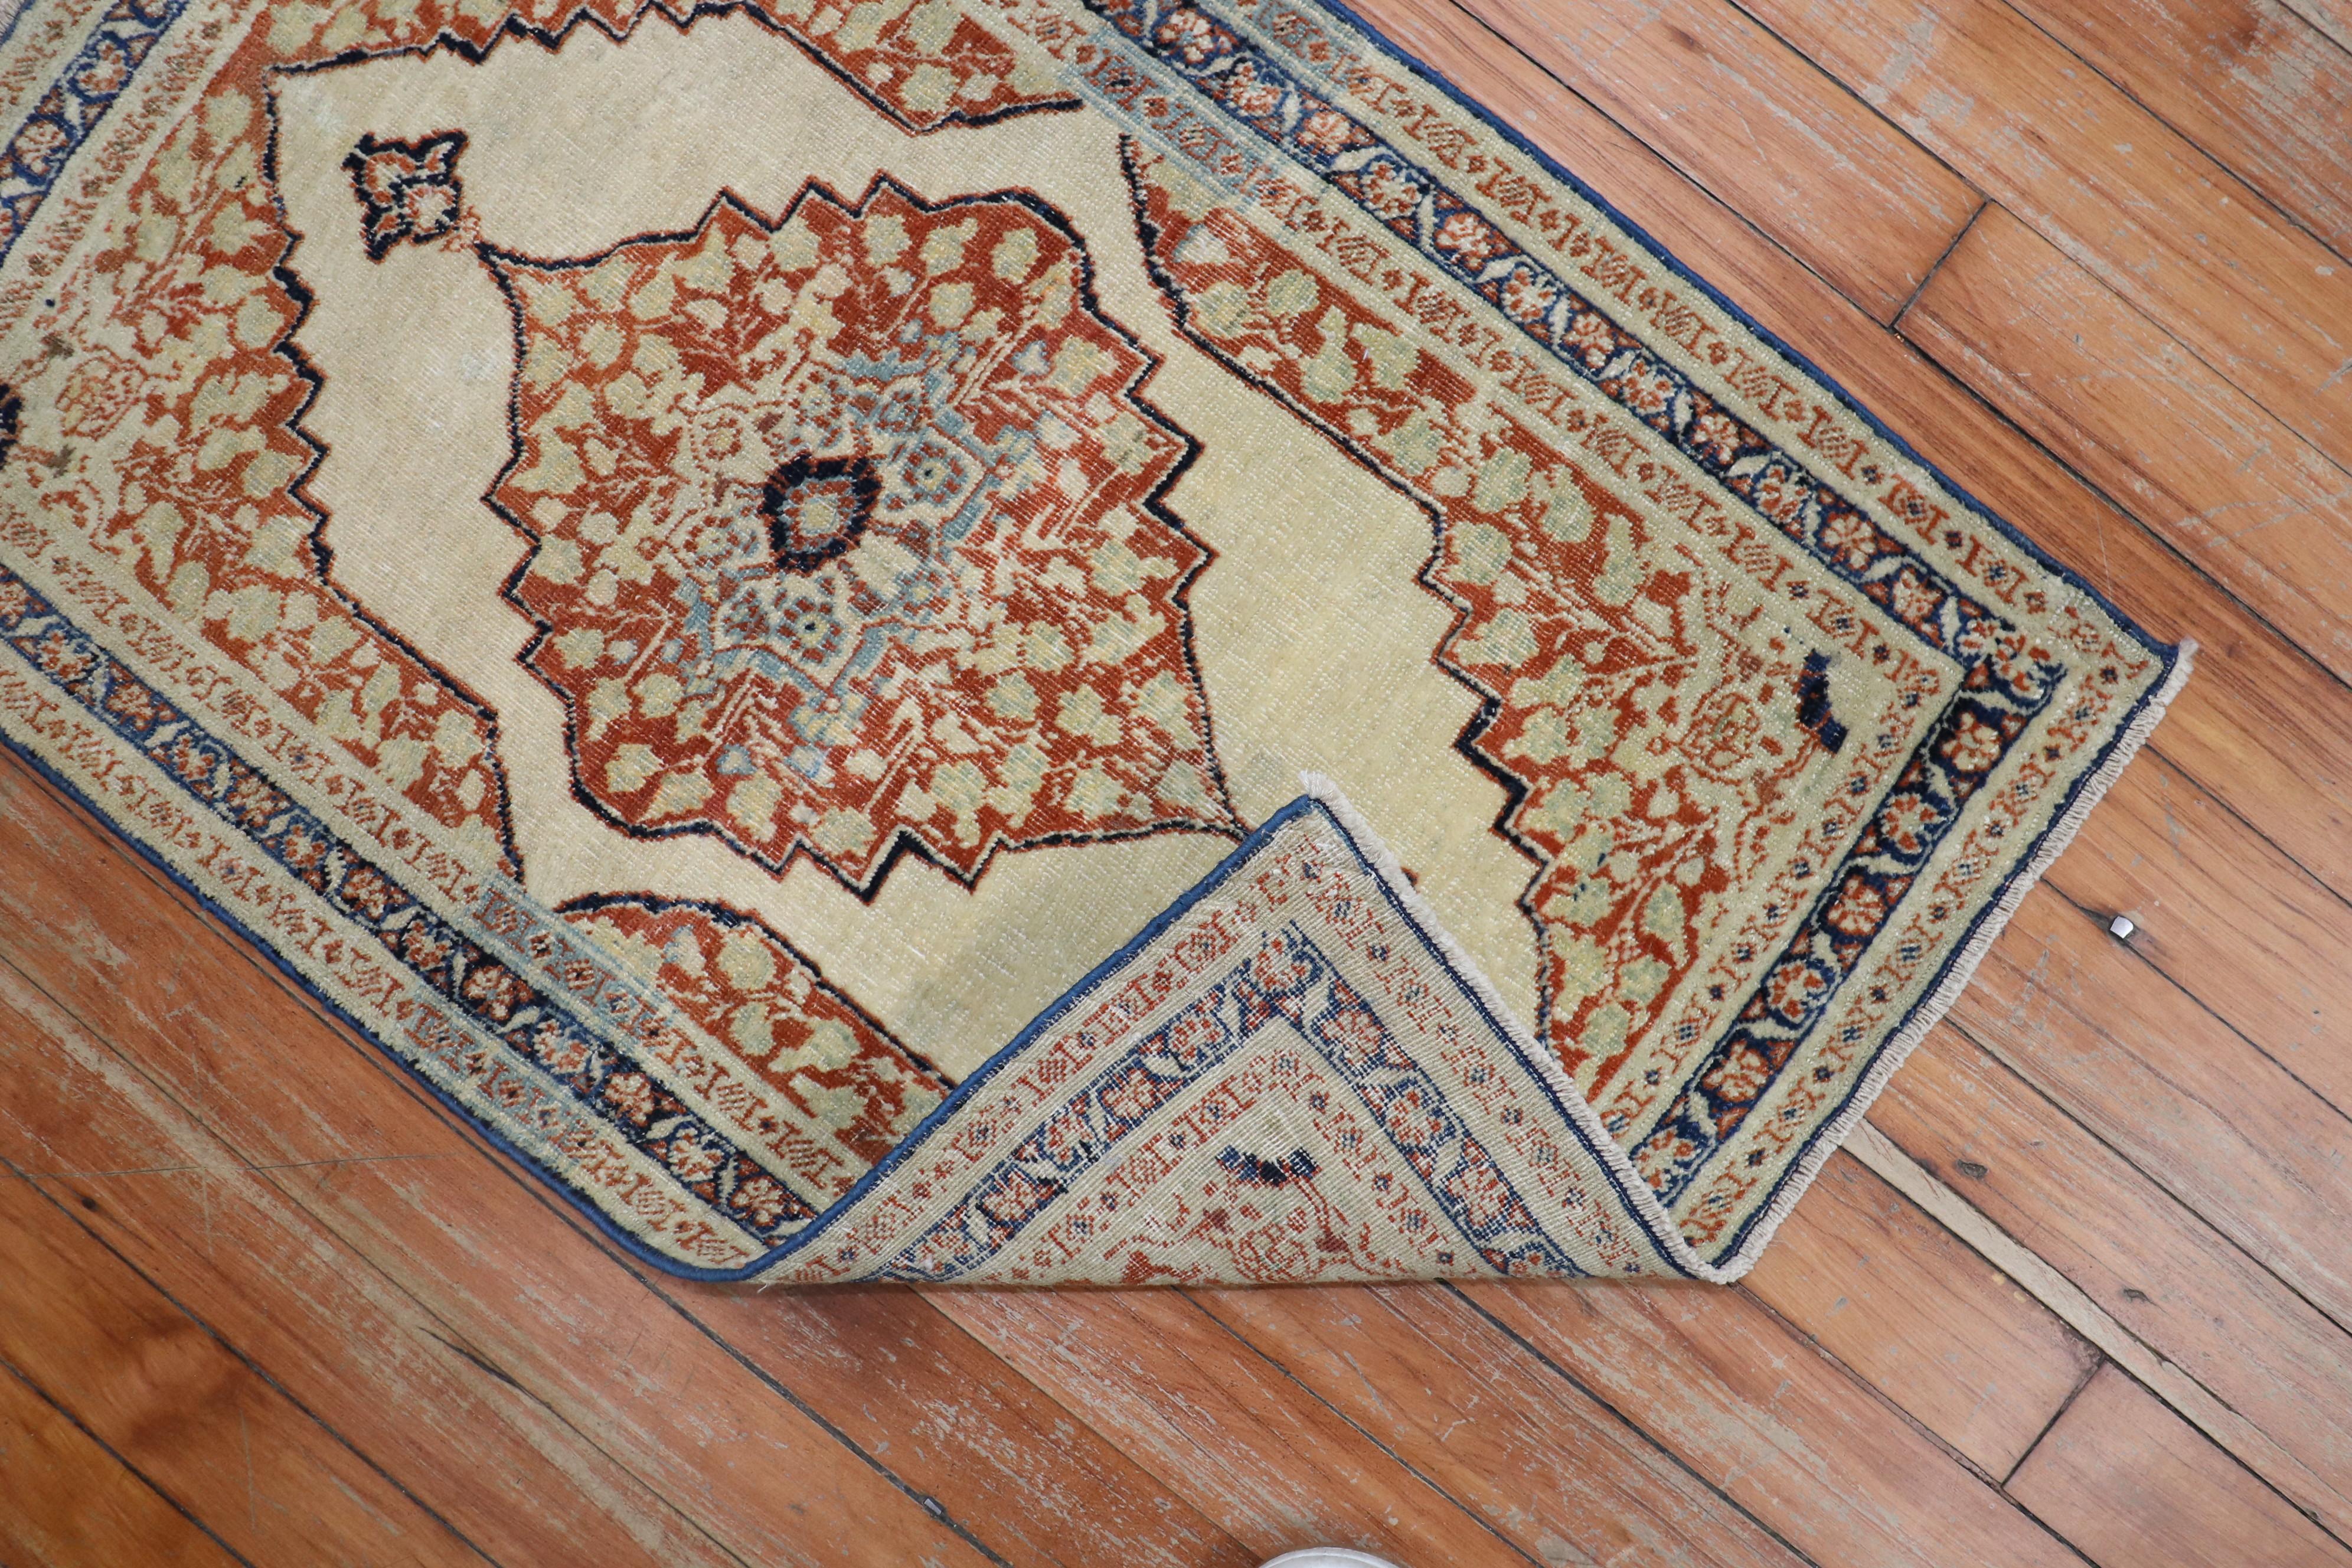 Ein bemerkenswerter Teppich aus Täbris, gewebt in der Werkstatt von Hadji Jalili in der Stadt Täbris. Die vorherrschenden Farben sind Lachs, Orange, Creme und Blau. Die Webart, die Verarbeitung und die Qualität des Teppichs sind superfein. Für den